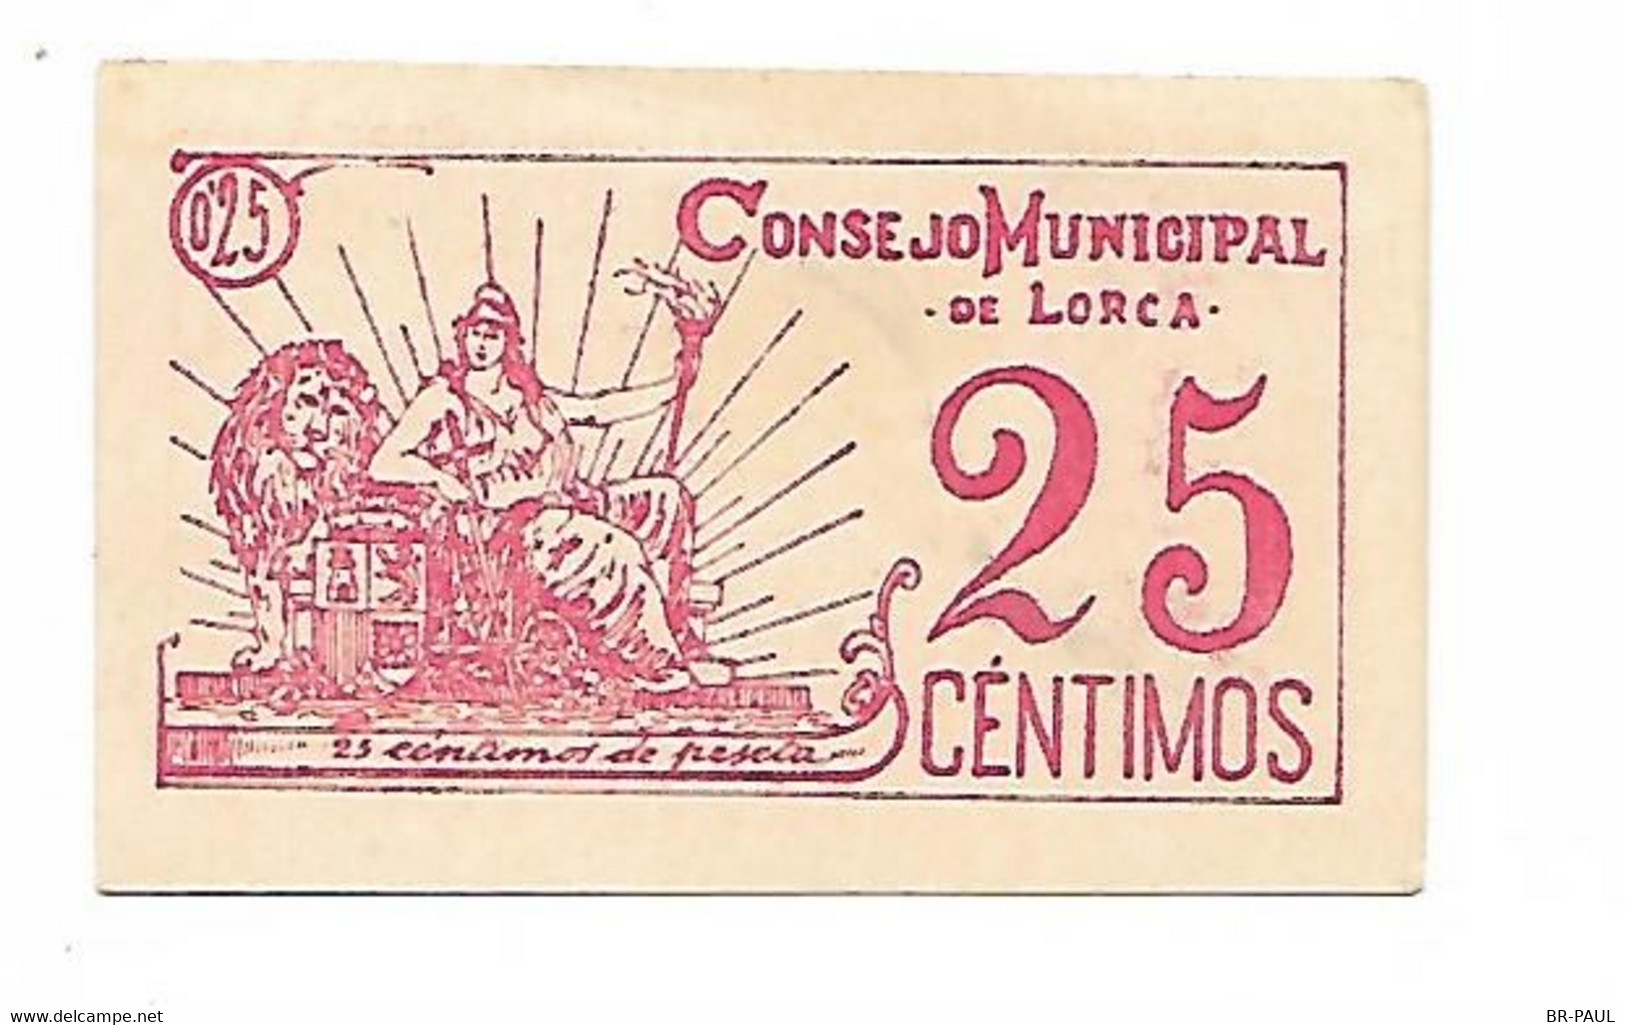 ESPAGNE / VINGT CINQ  CENTIMES 1937 - CONSEJO MUNICIPAL DE LORCA / BILLET NEUF - 1-2 Peseten